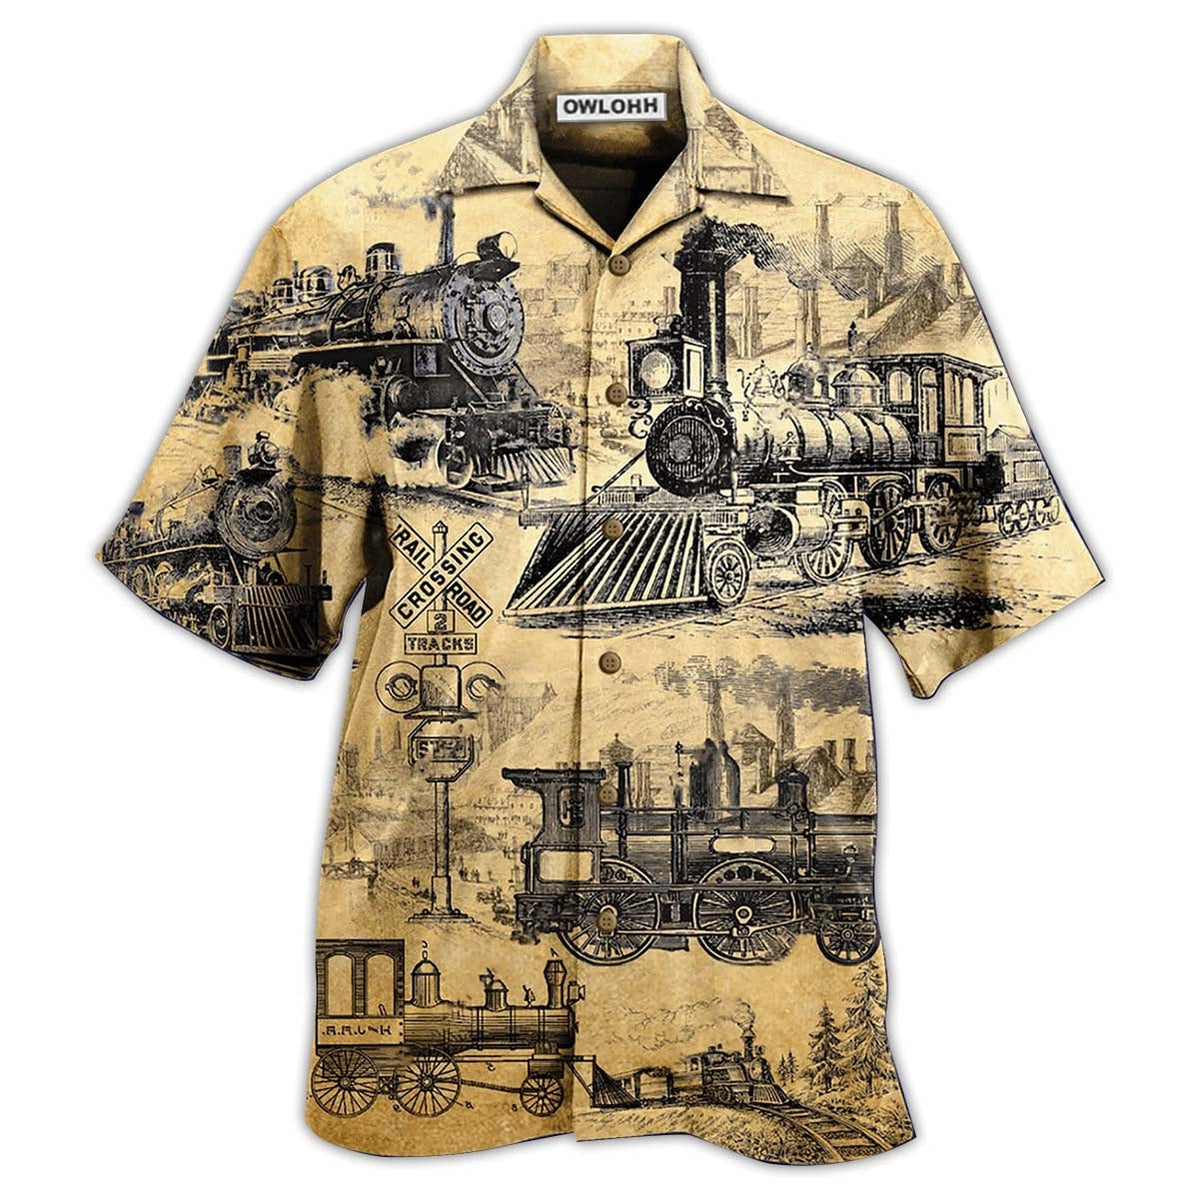 Hawaiian Shirt / Adults / S Train On The Railway Love Life - Hawaiian Shirt - Owls Matrix LTD